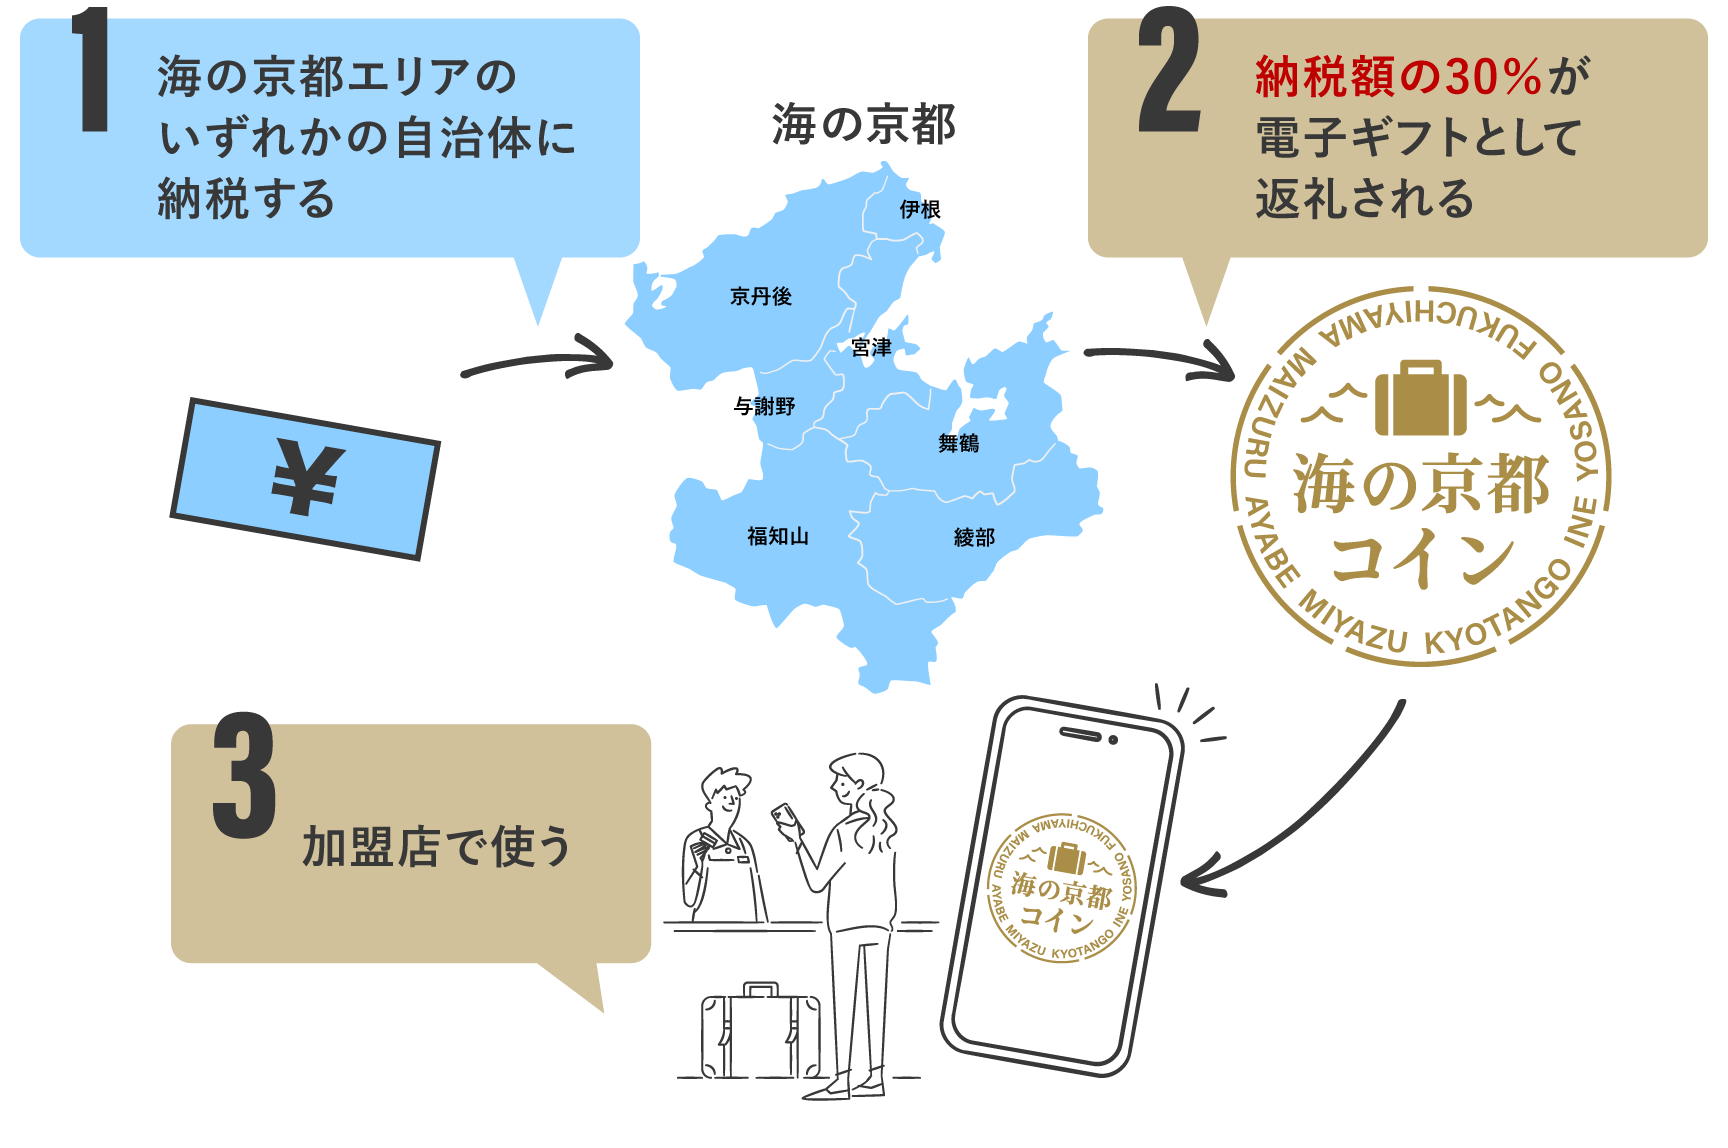 1.海の京都エリアのいずれかの自治体に納税する 2.納税額の30%が電子ギフトとして返礼される 3.加盟店で使う